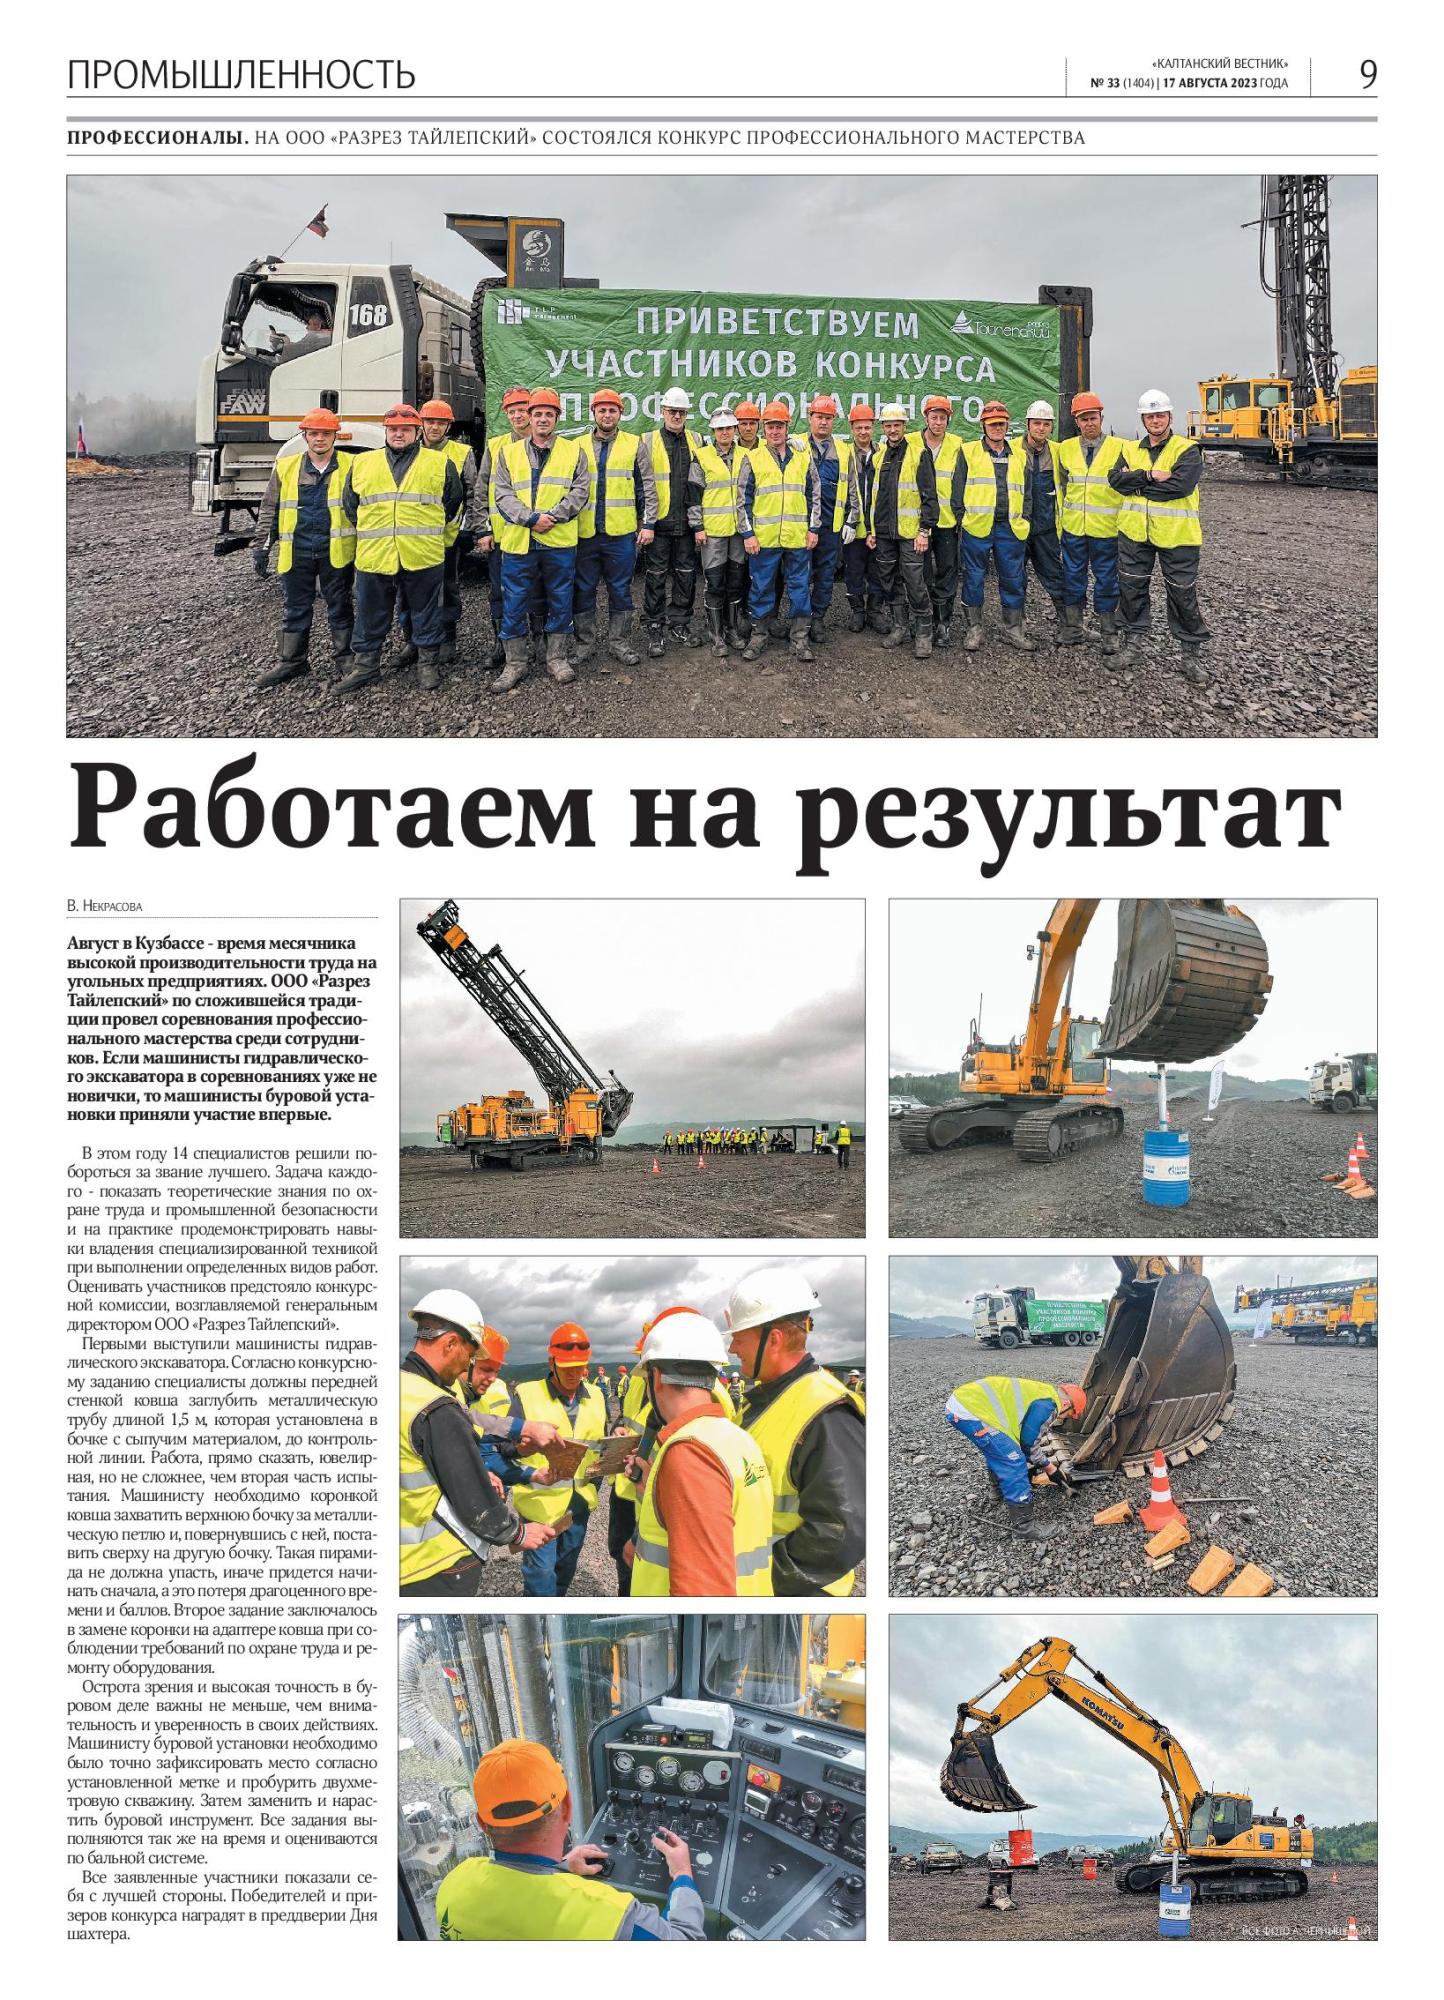 Август в Кузбассе - время месячника высокой производительности труда на угольных предприятиях.